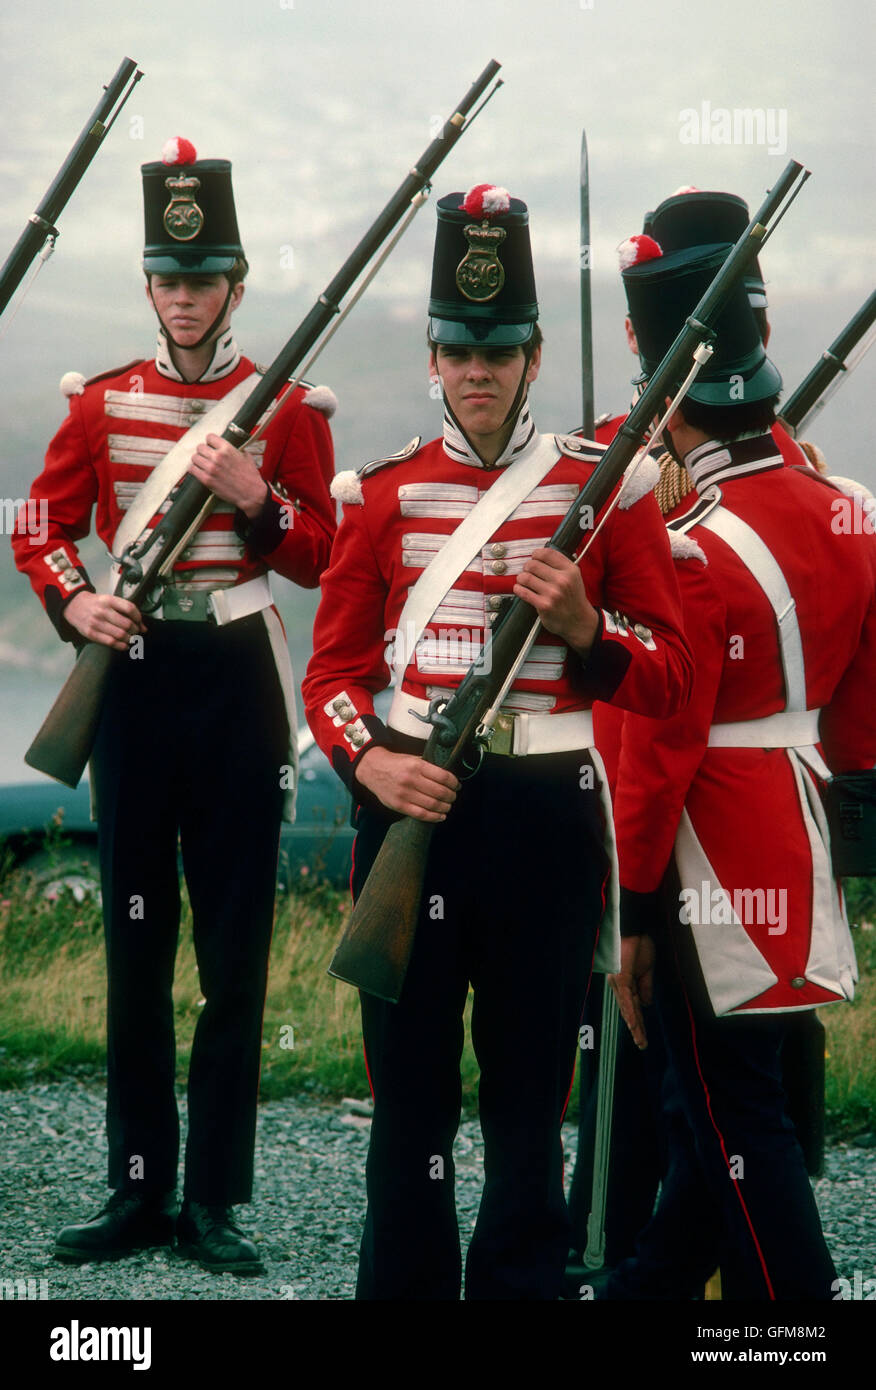 1970s NL Uniforms